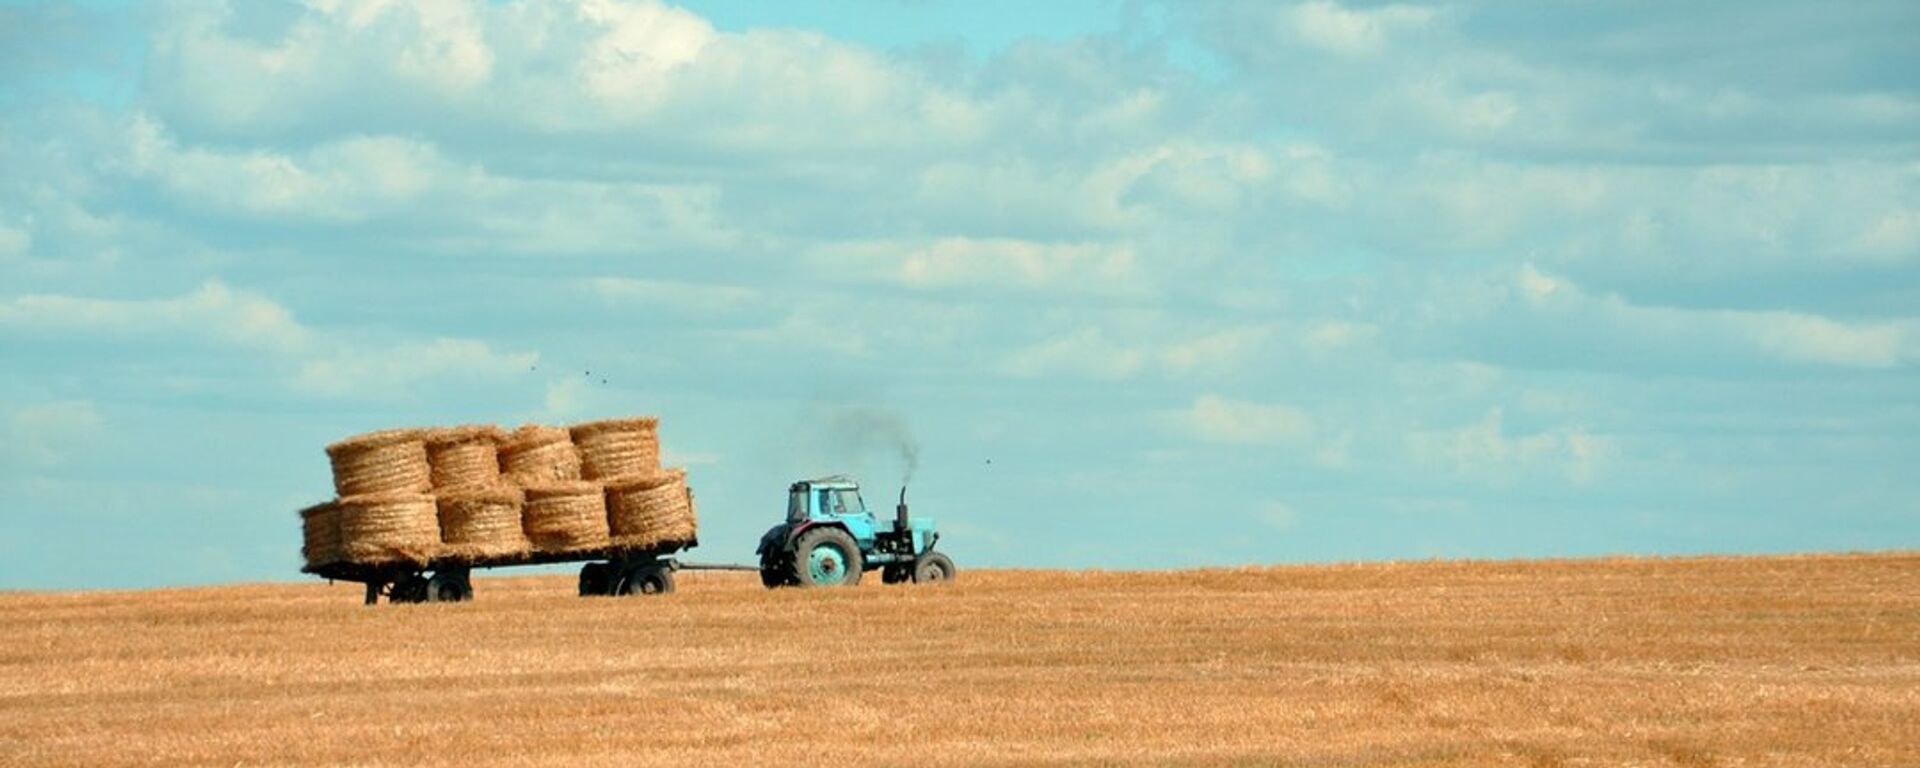 Трактор на поле собирает пшеницу - Sputnik Латвия, 1920, 24.08.2019